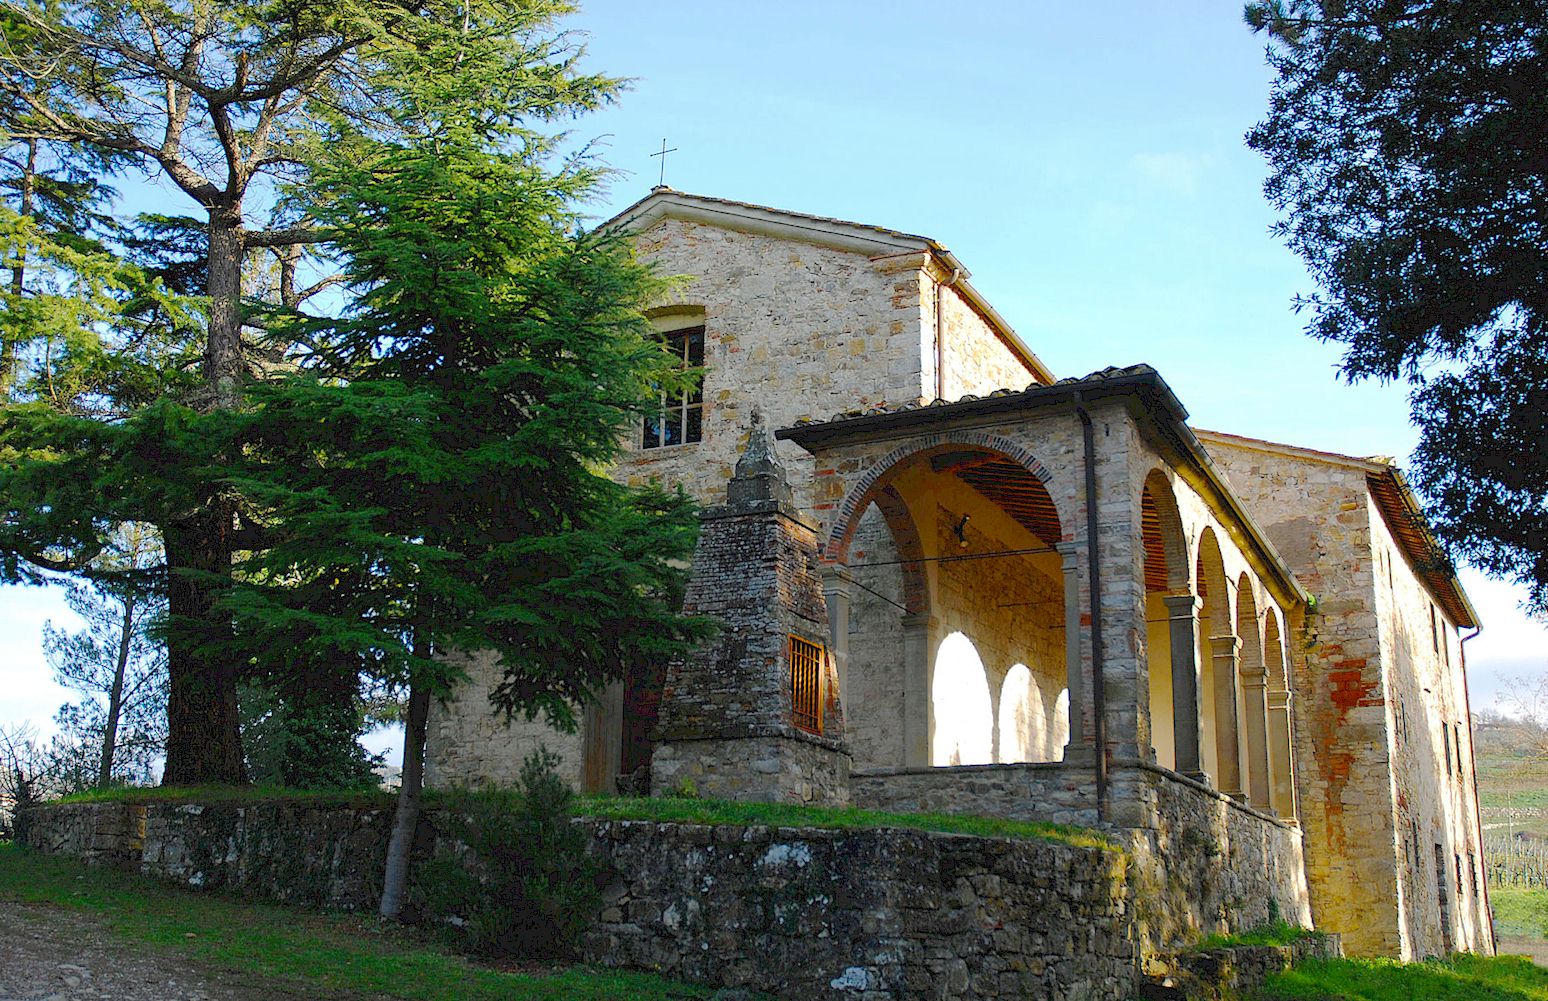 Oratorio di Sant'Eufrosino at Panzano